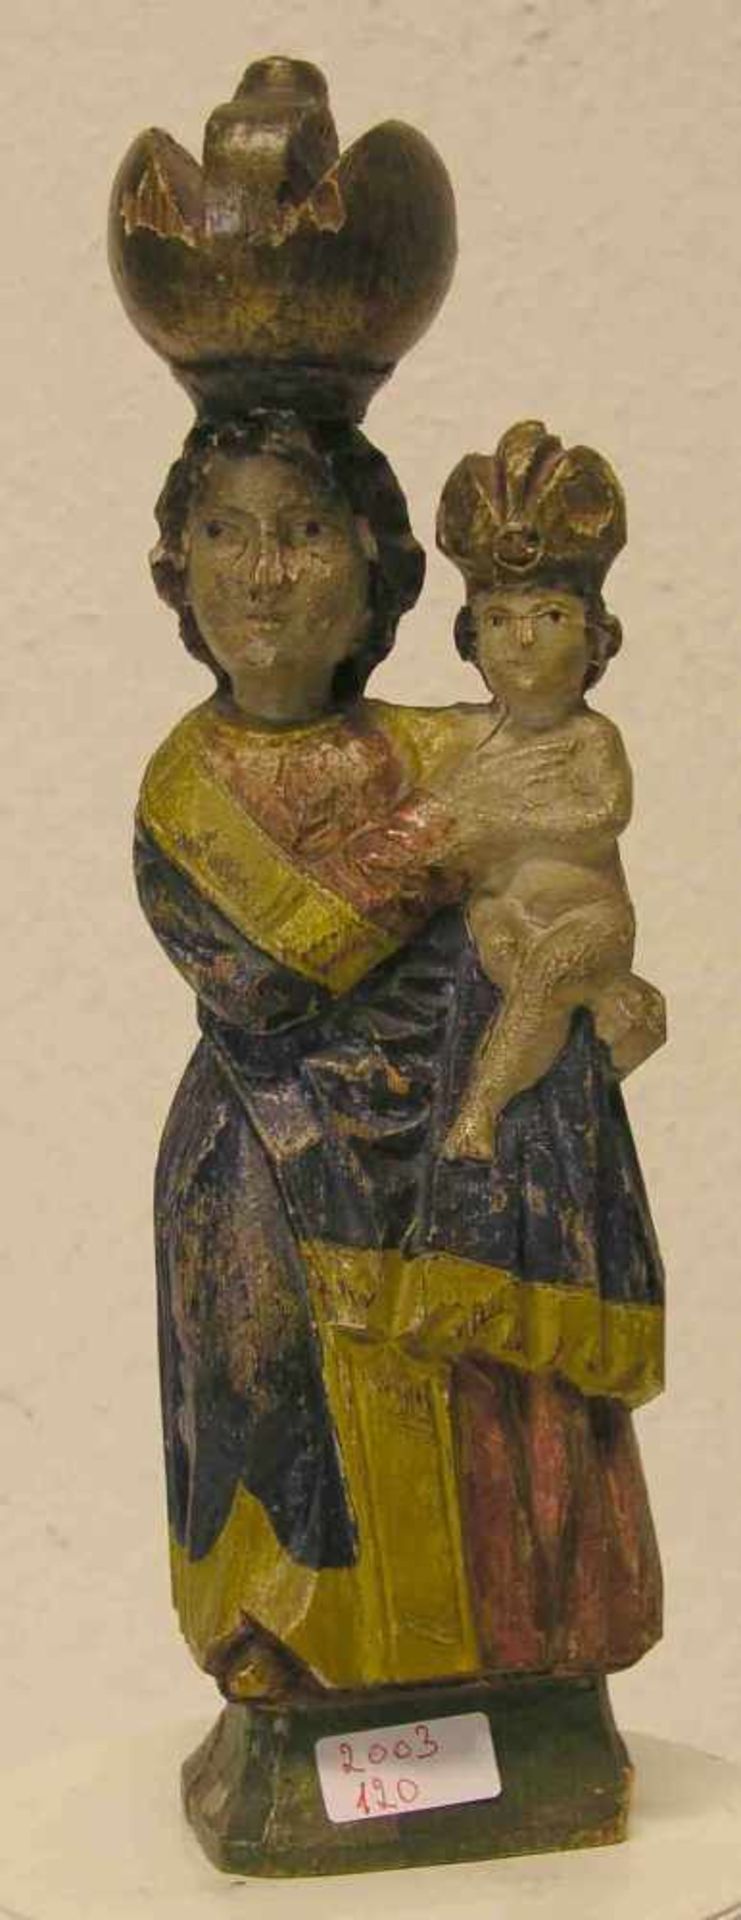 Madonna mit Kind. Böhmen. 19. Jh. Holz geschnitzt, farbig gefasst, Höhe: 35cm; rest.-bed.